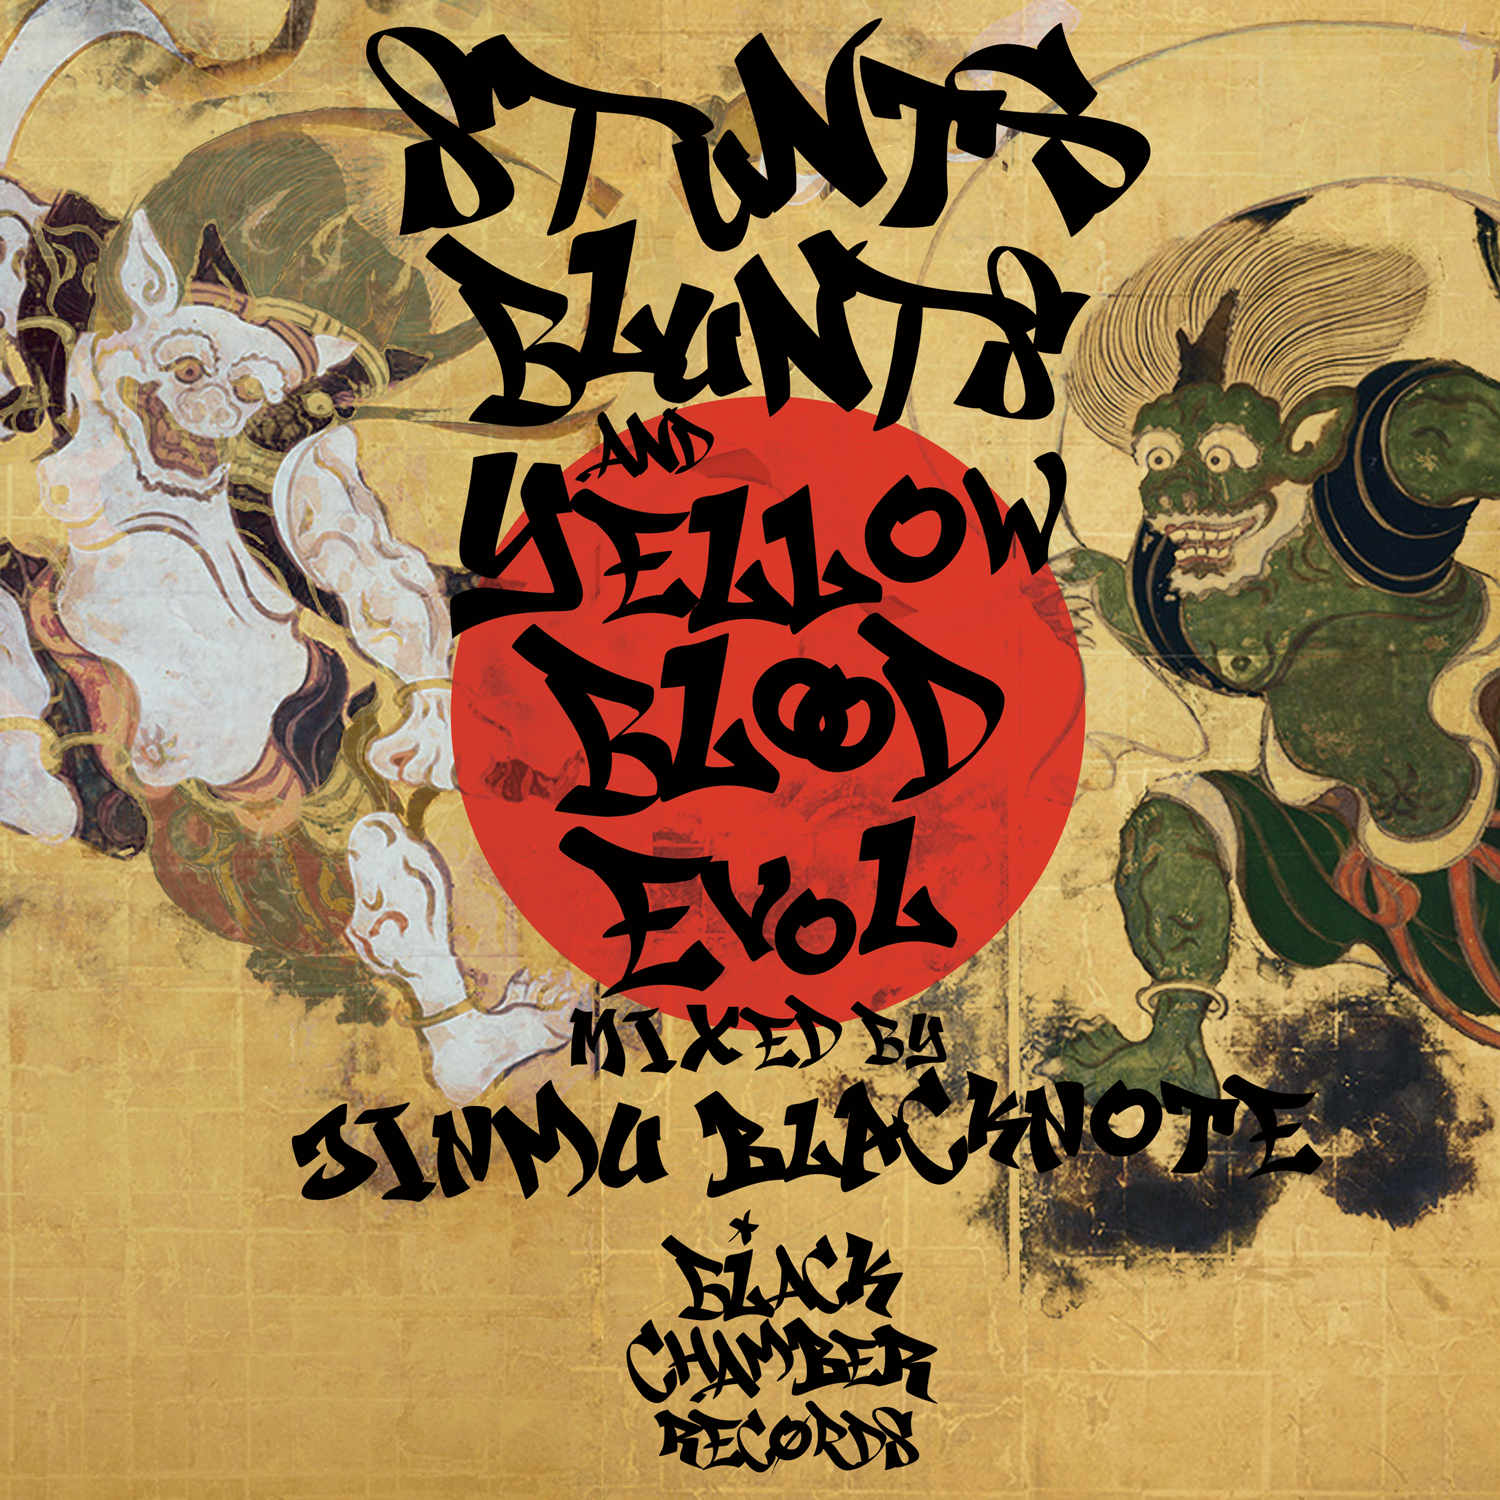 Stunts Blunts & Yellow Blood Evol